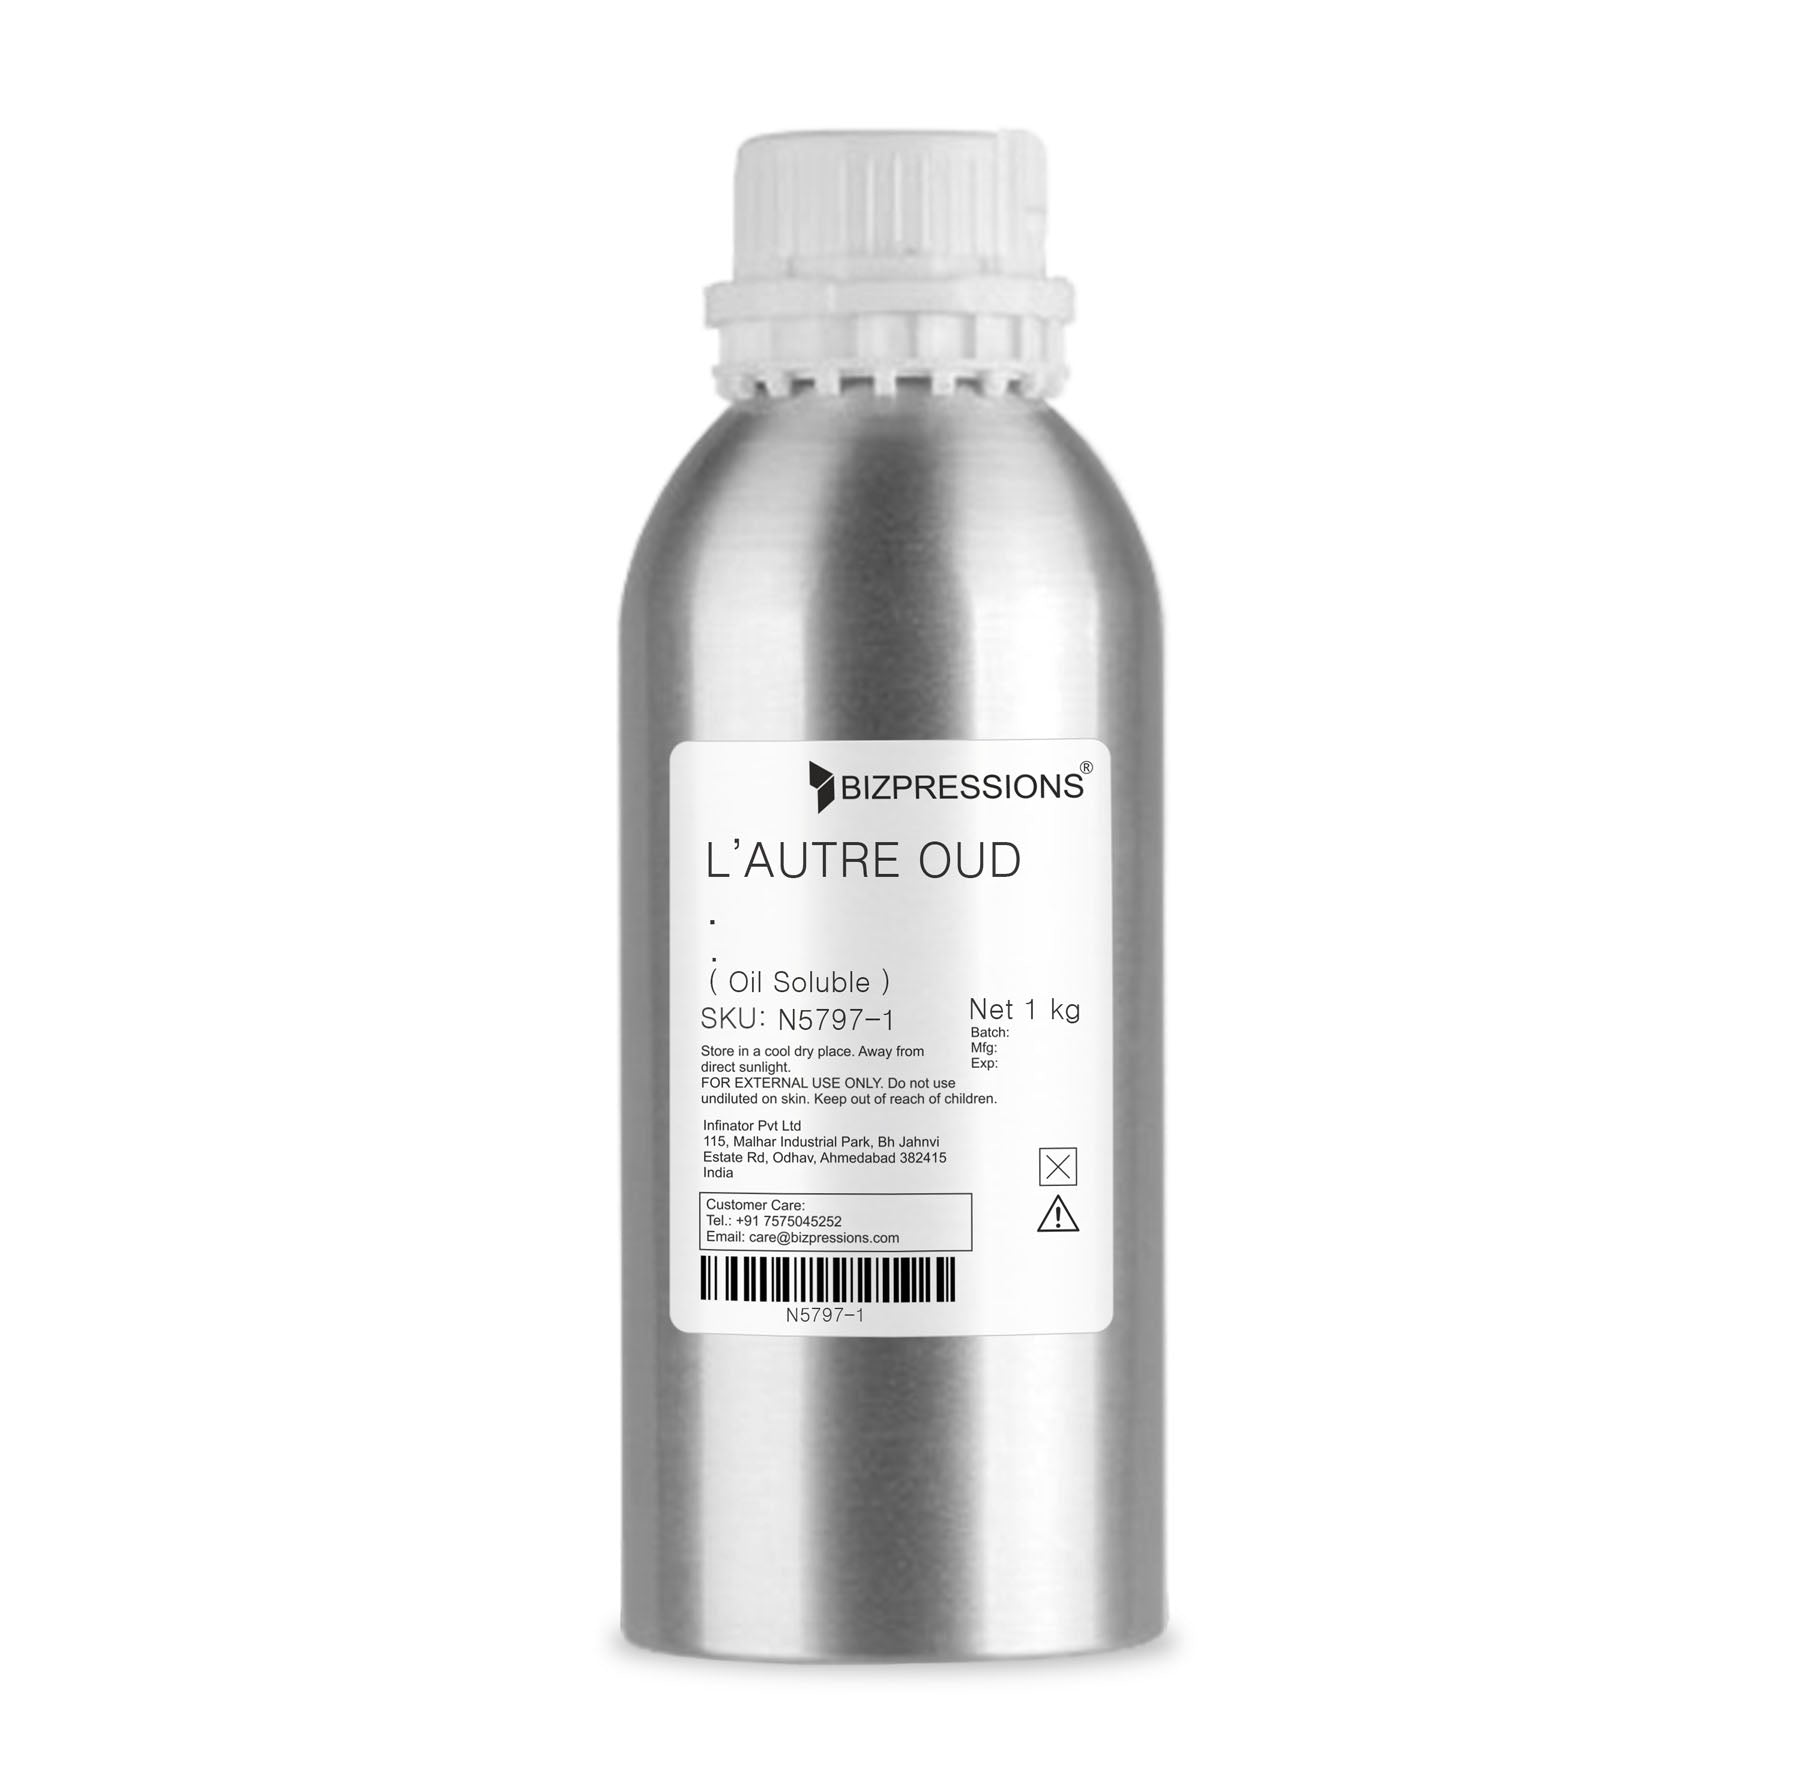 L'AUTRE OUD - Fragrance ( Oil Soluble ) - 1 kg